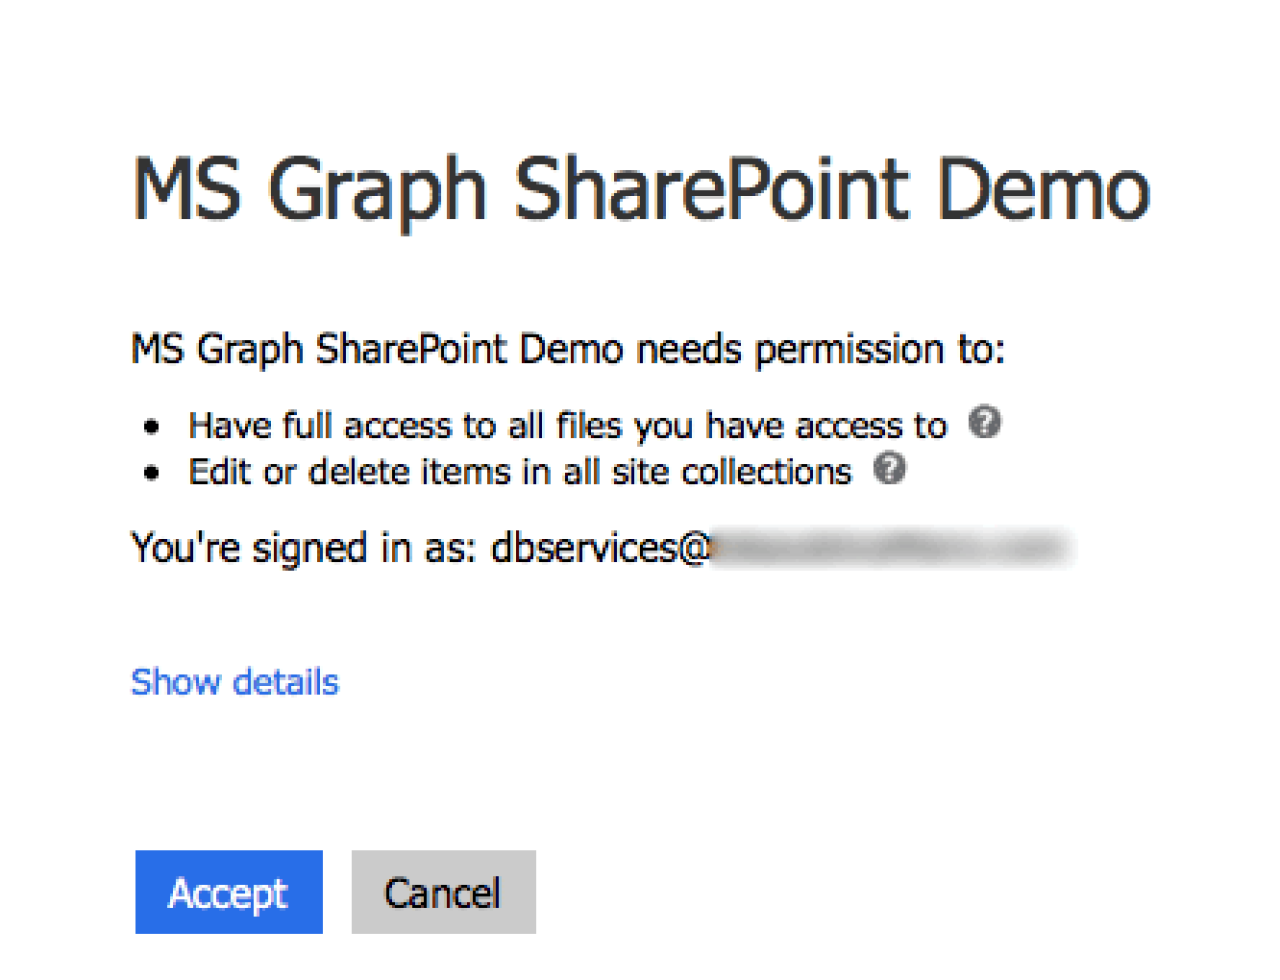 filemaker ms graph sharepoint allow access.